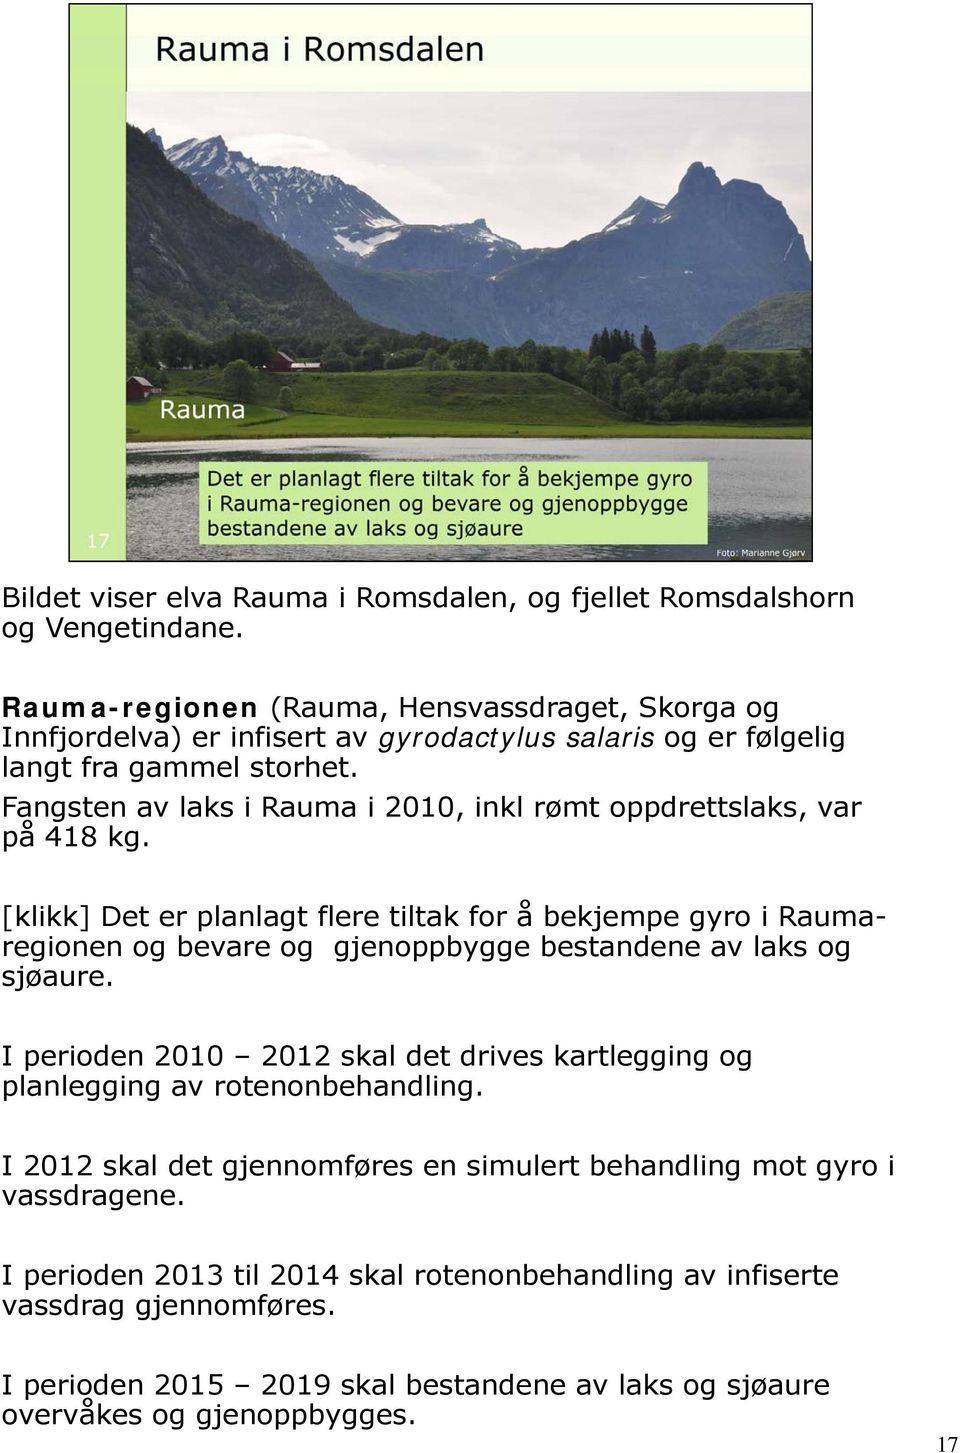 Fangsten av laks i Rauma i 2010, inkl rømt oppdrettslaks, var på 418 kg.